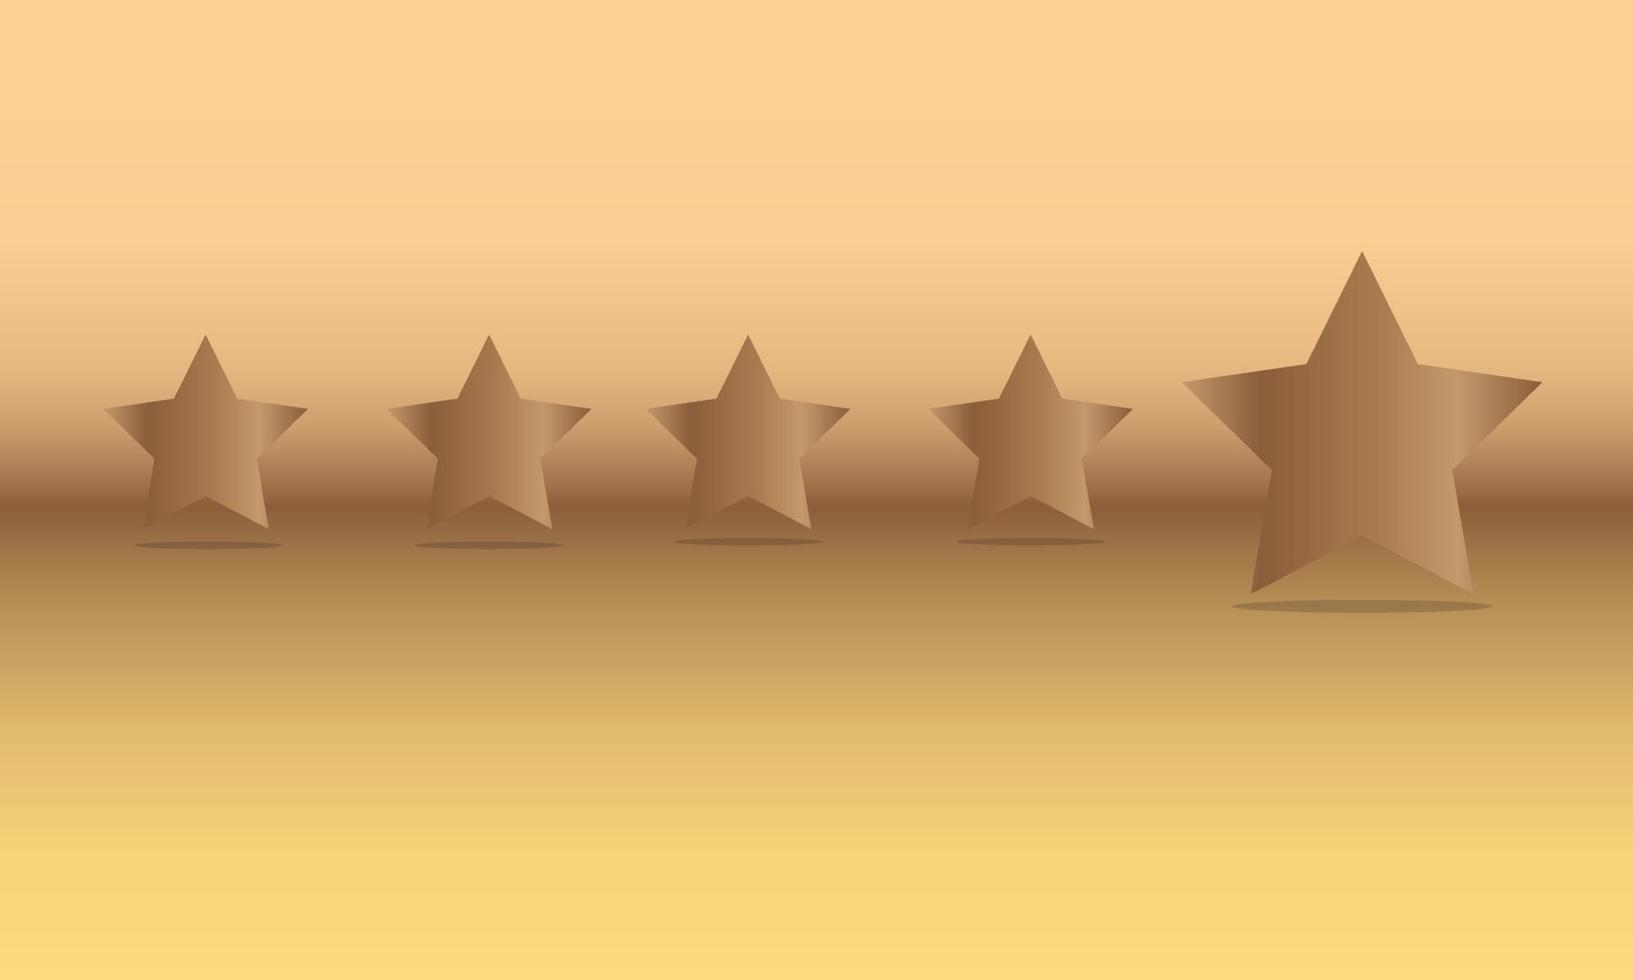 cinco estrelas de classificação de ouro símbolo do serviço de revisão de satisfação do cliente melhor ícone de classificação de qualidade ou marca de prêmio de sucesso feedback brilhante e taxa de avaliação do produto. vetor eps10